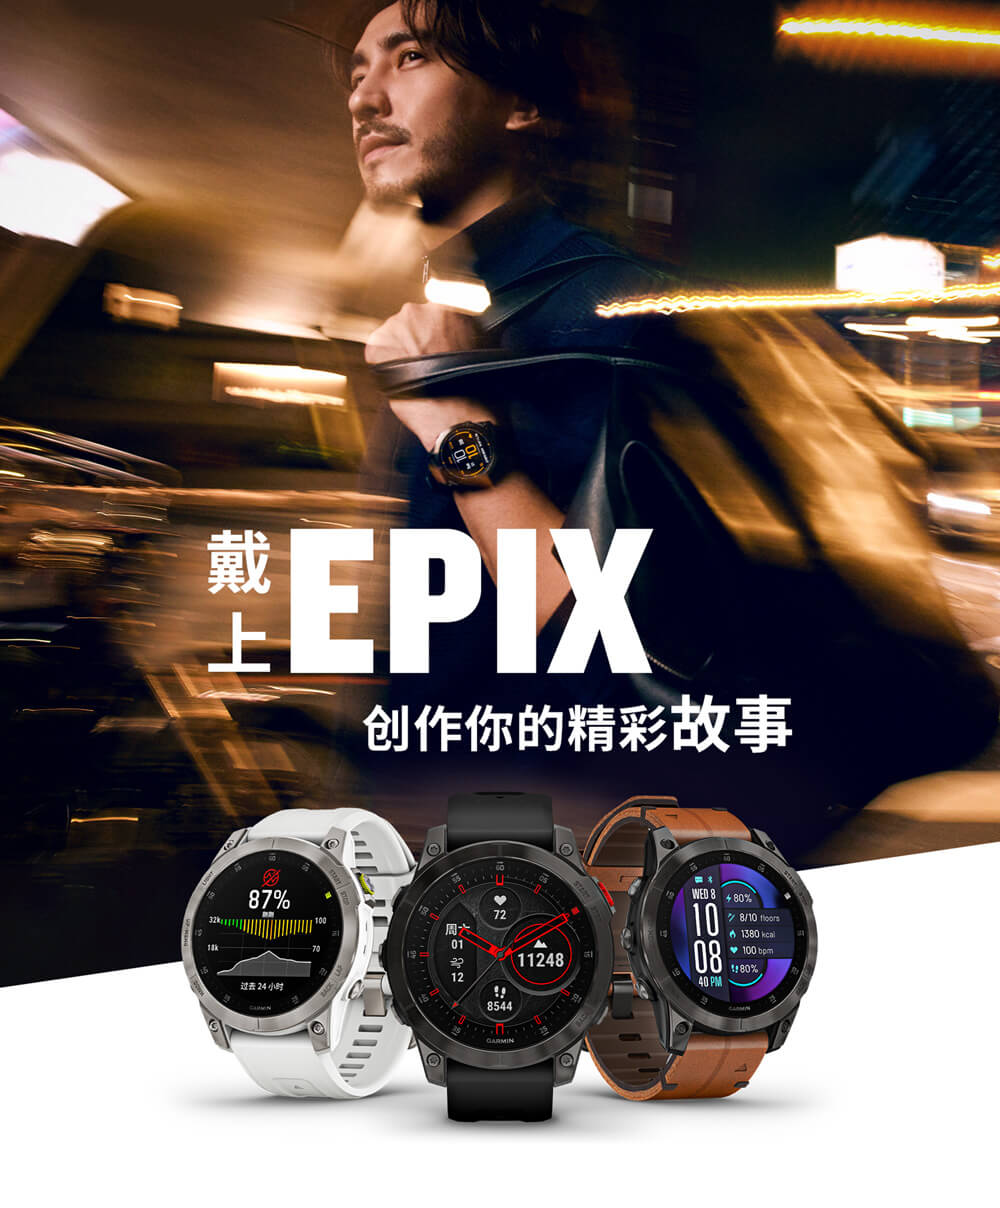 易耐时 epix 商务智能腕表，416 × 416 AMOLED 彩色触控屏幕，拥有 fēnix 系列强大的专业运动功能，将热爱冒险的DNA，完美融合都市节奏。